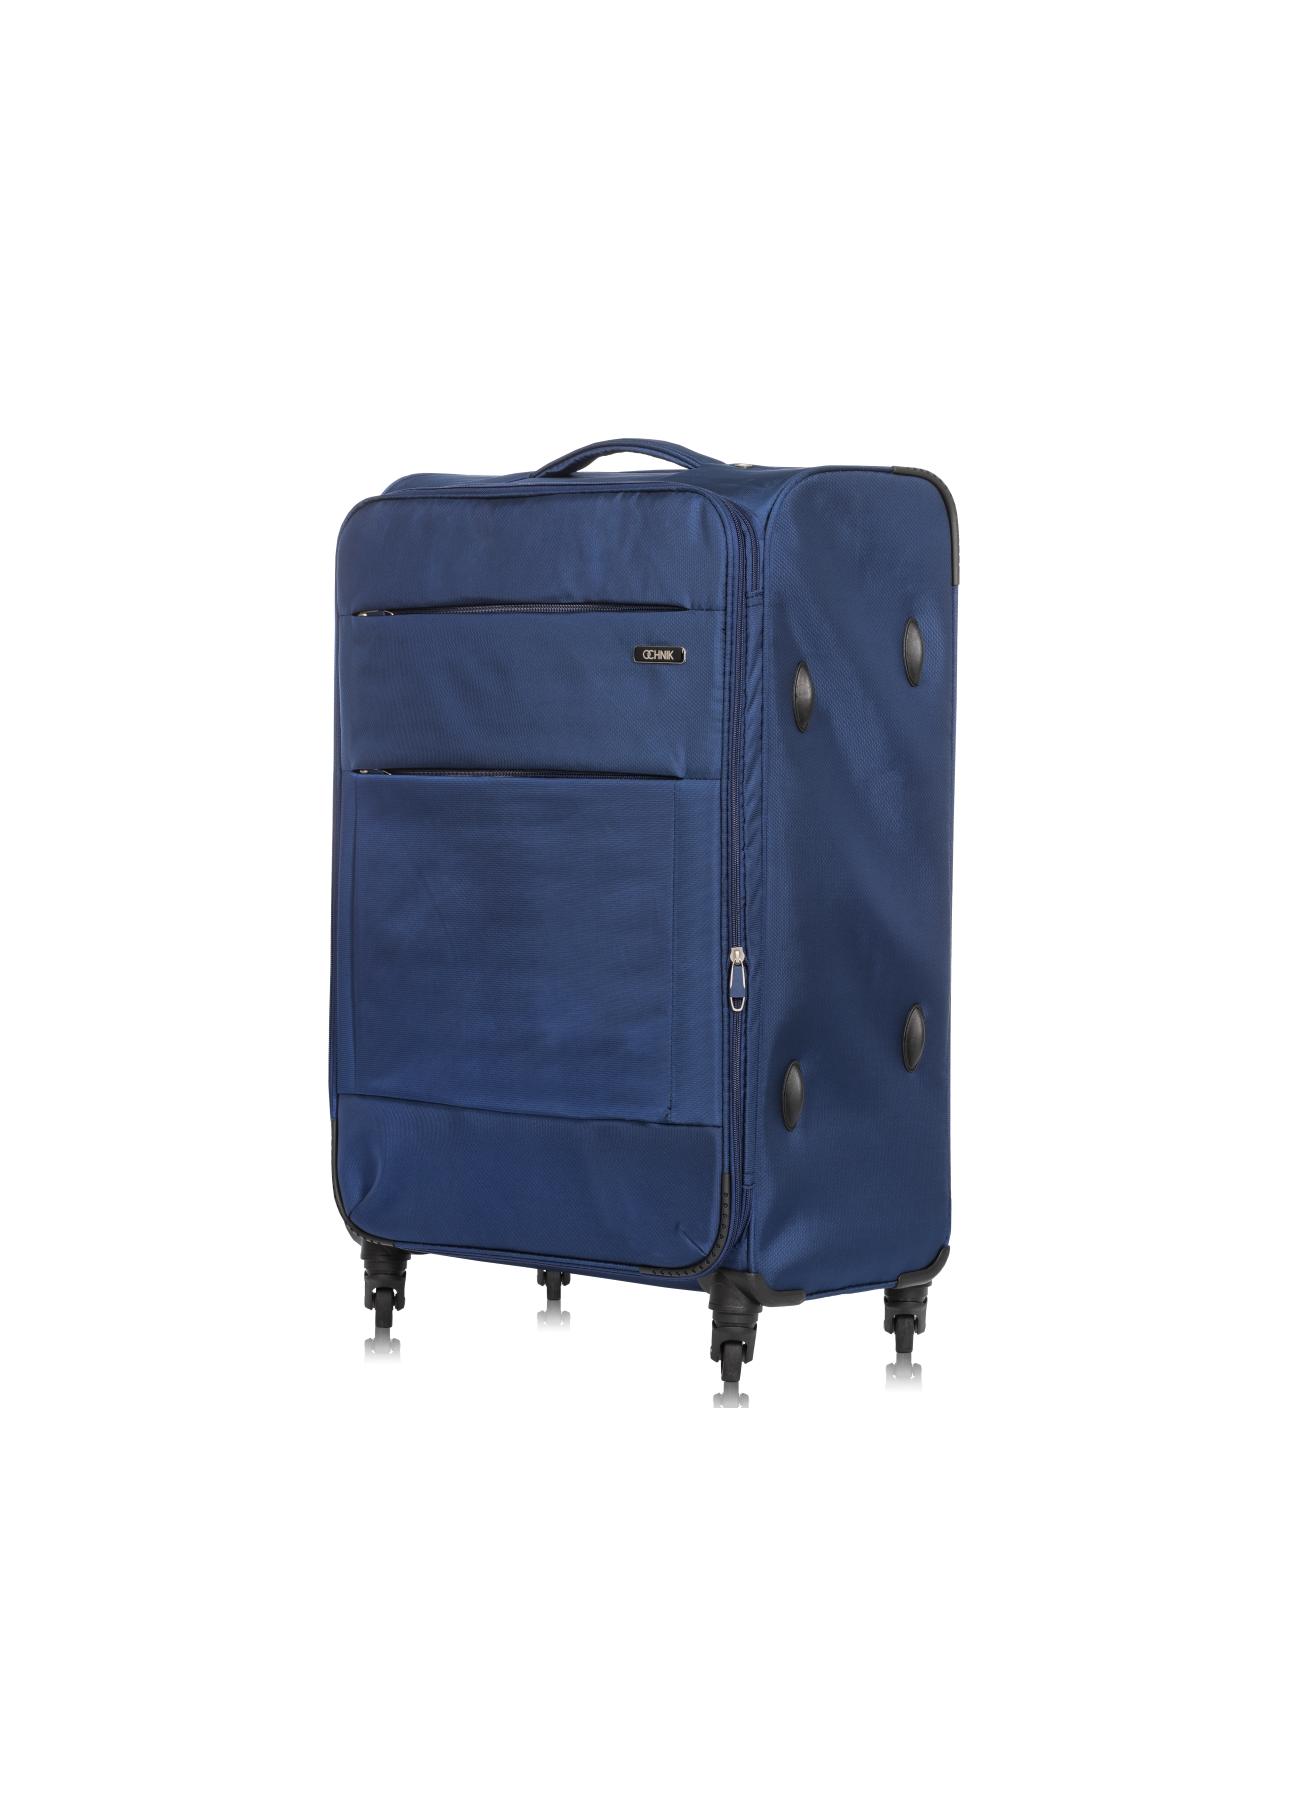 Duża walizka na kółkach  WALNY-0027-61-28